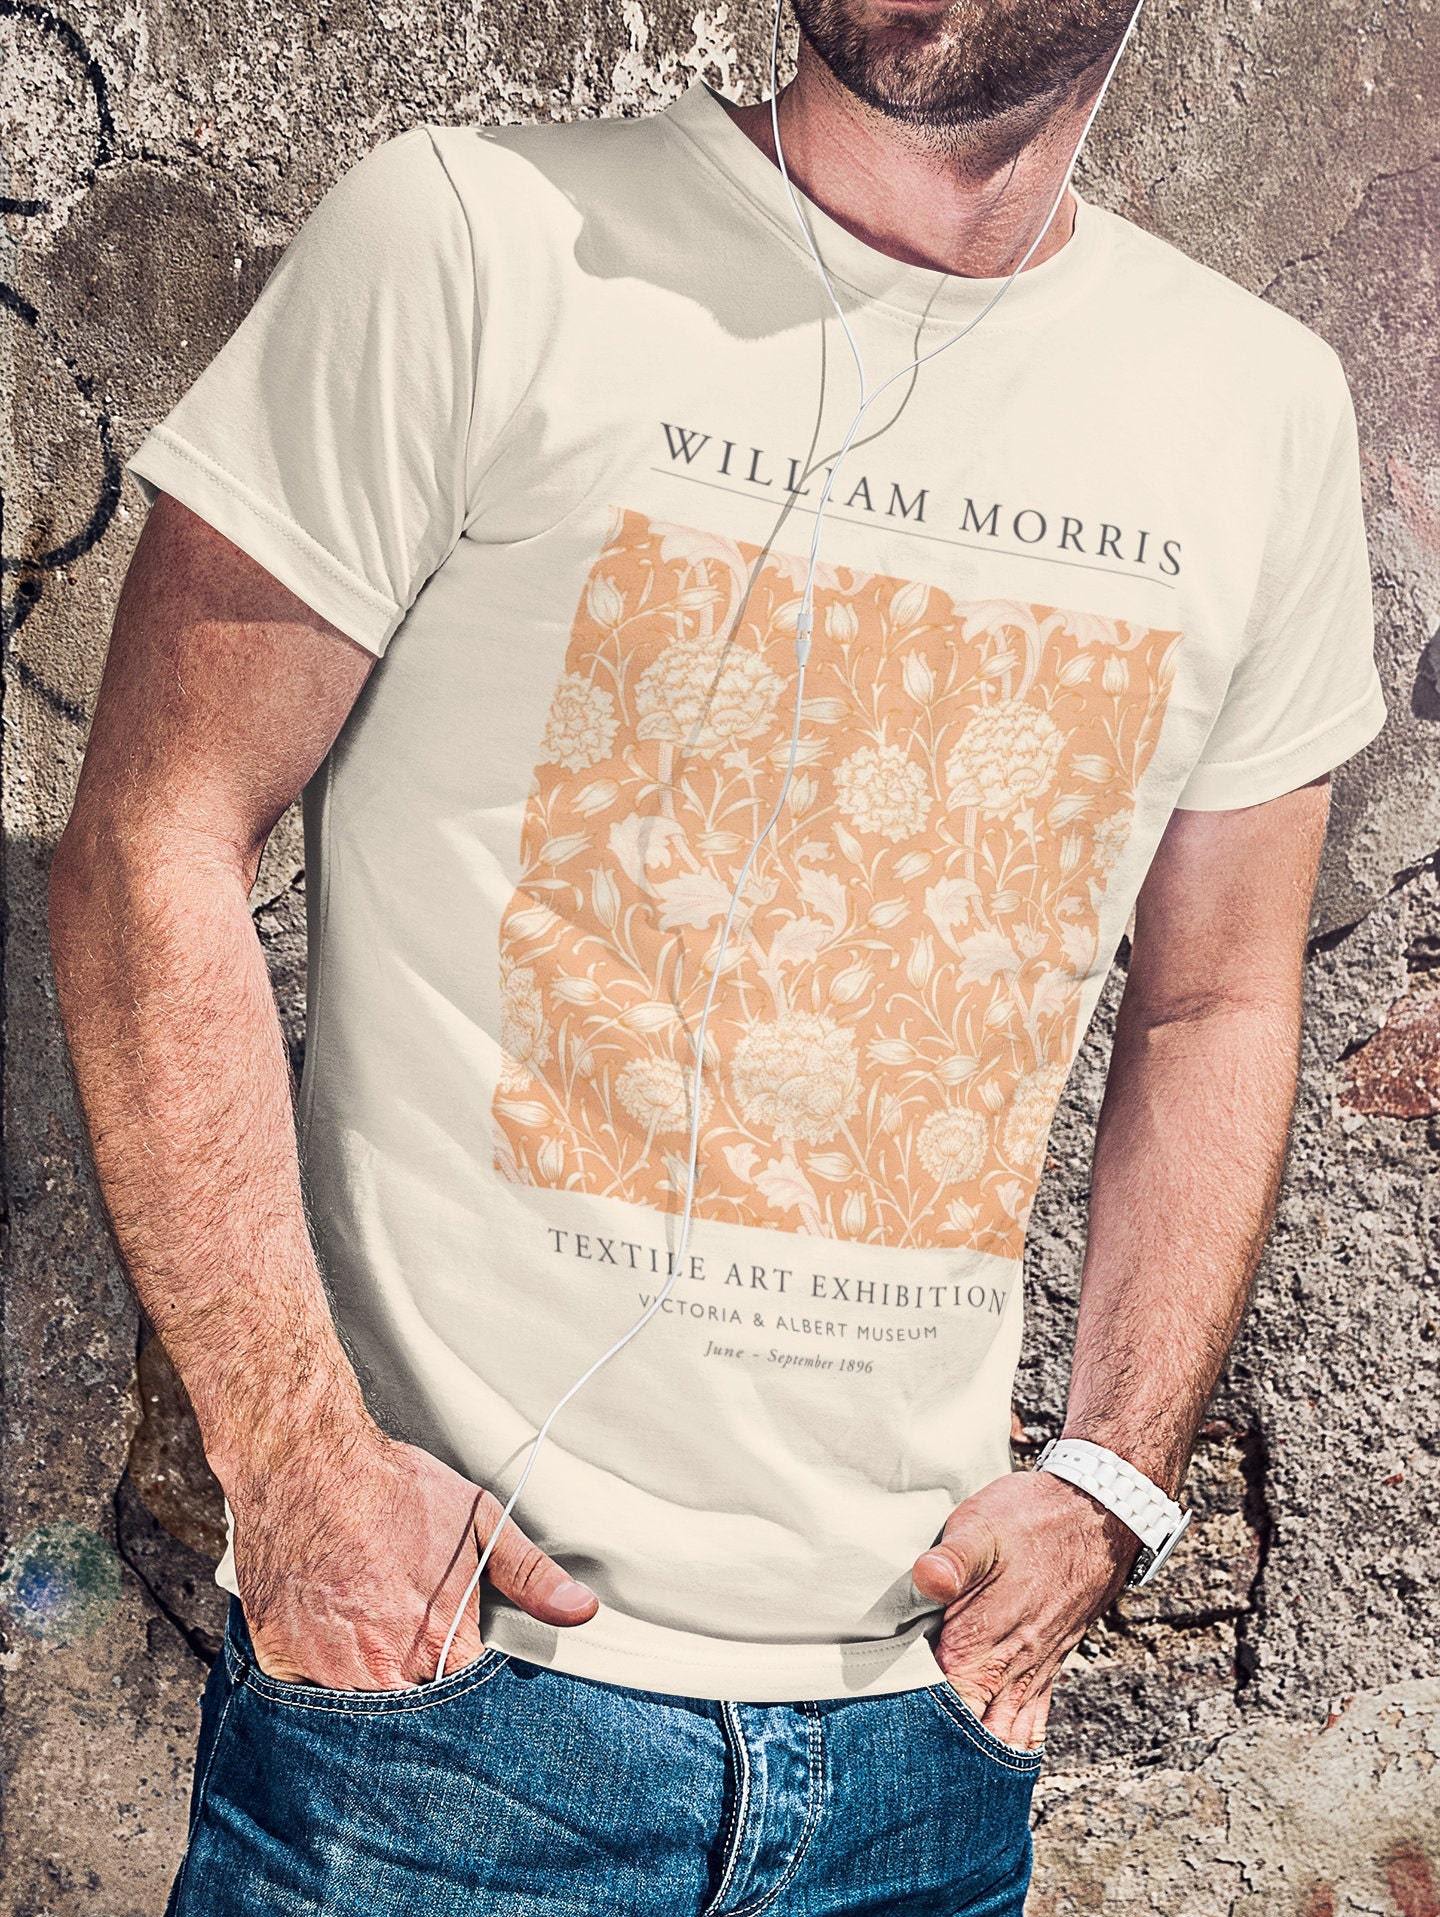 WILLIAM MORRIS – Wild Tulip Exhibition T-Shirt